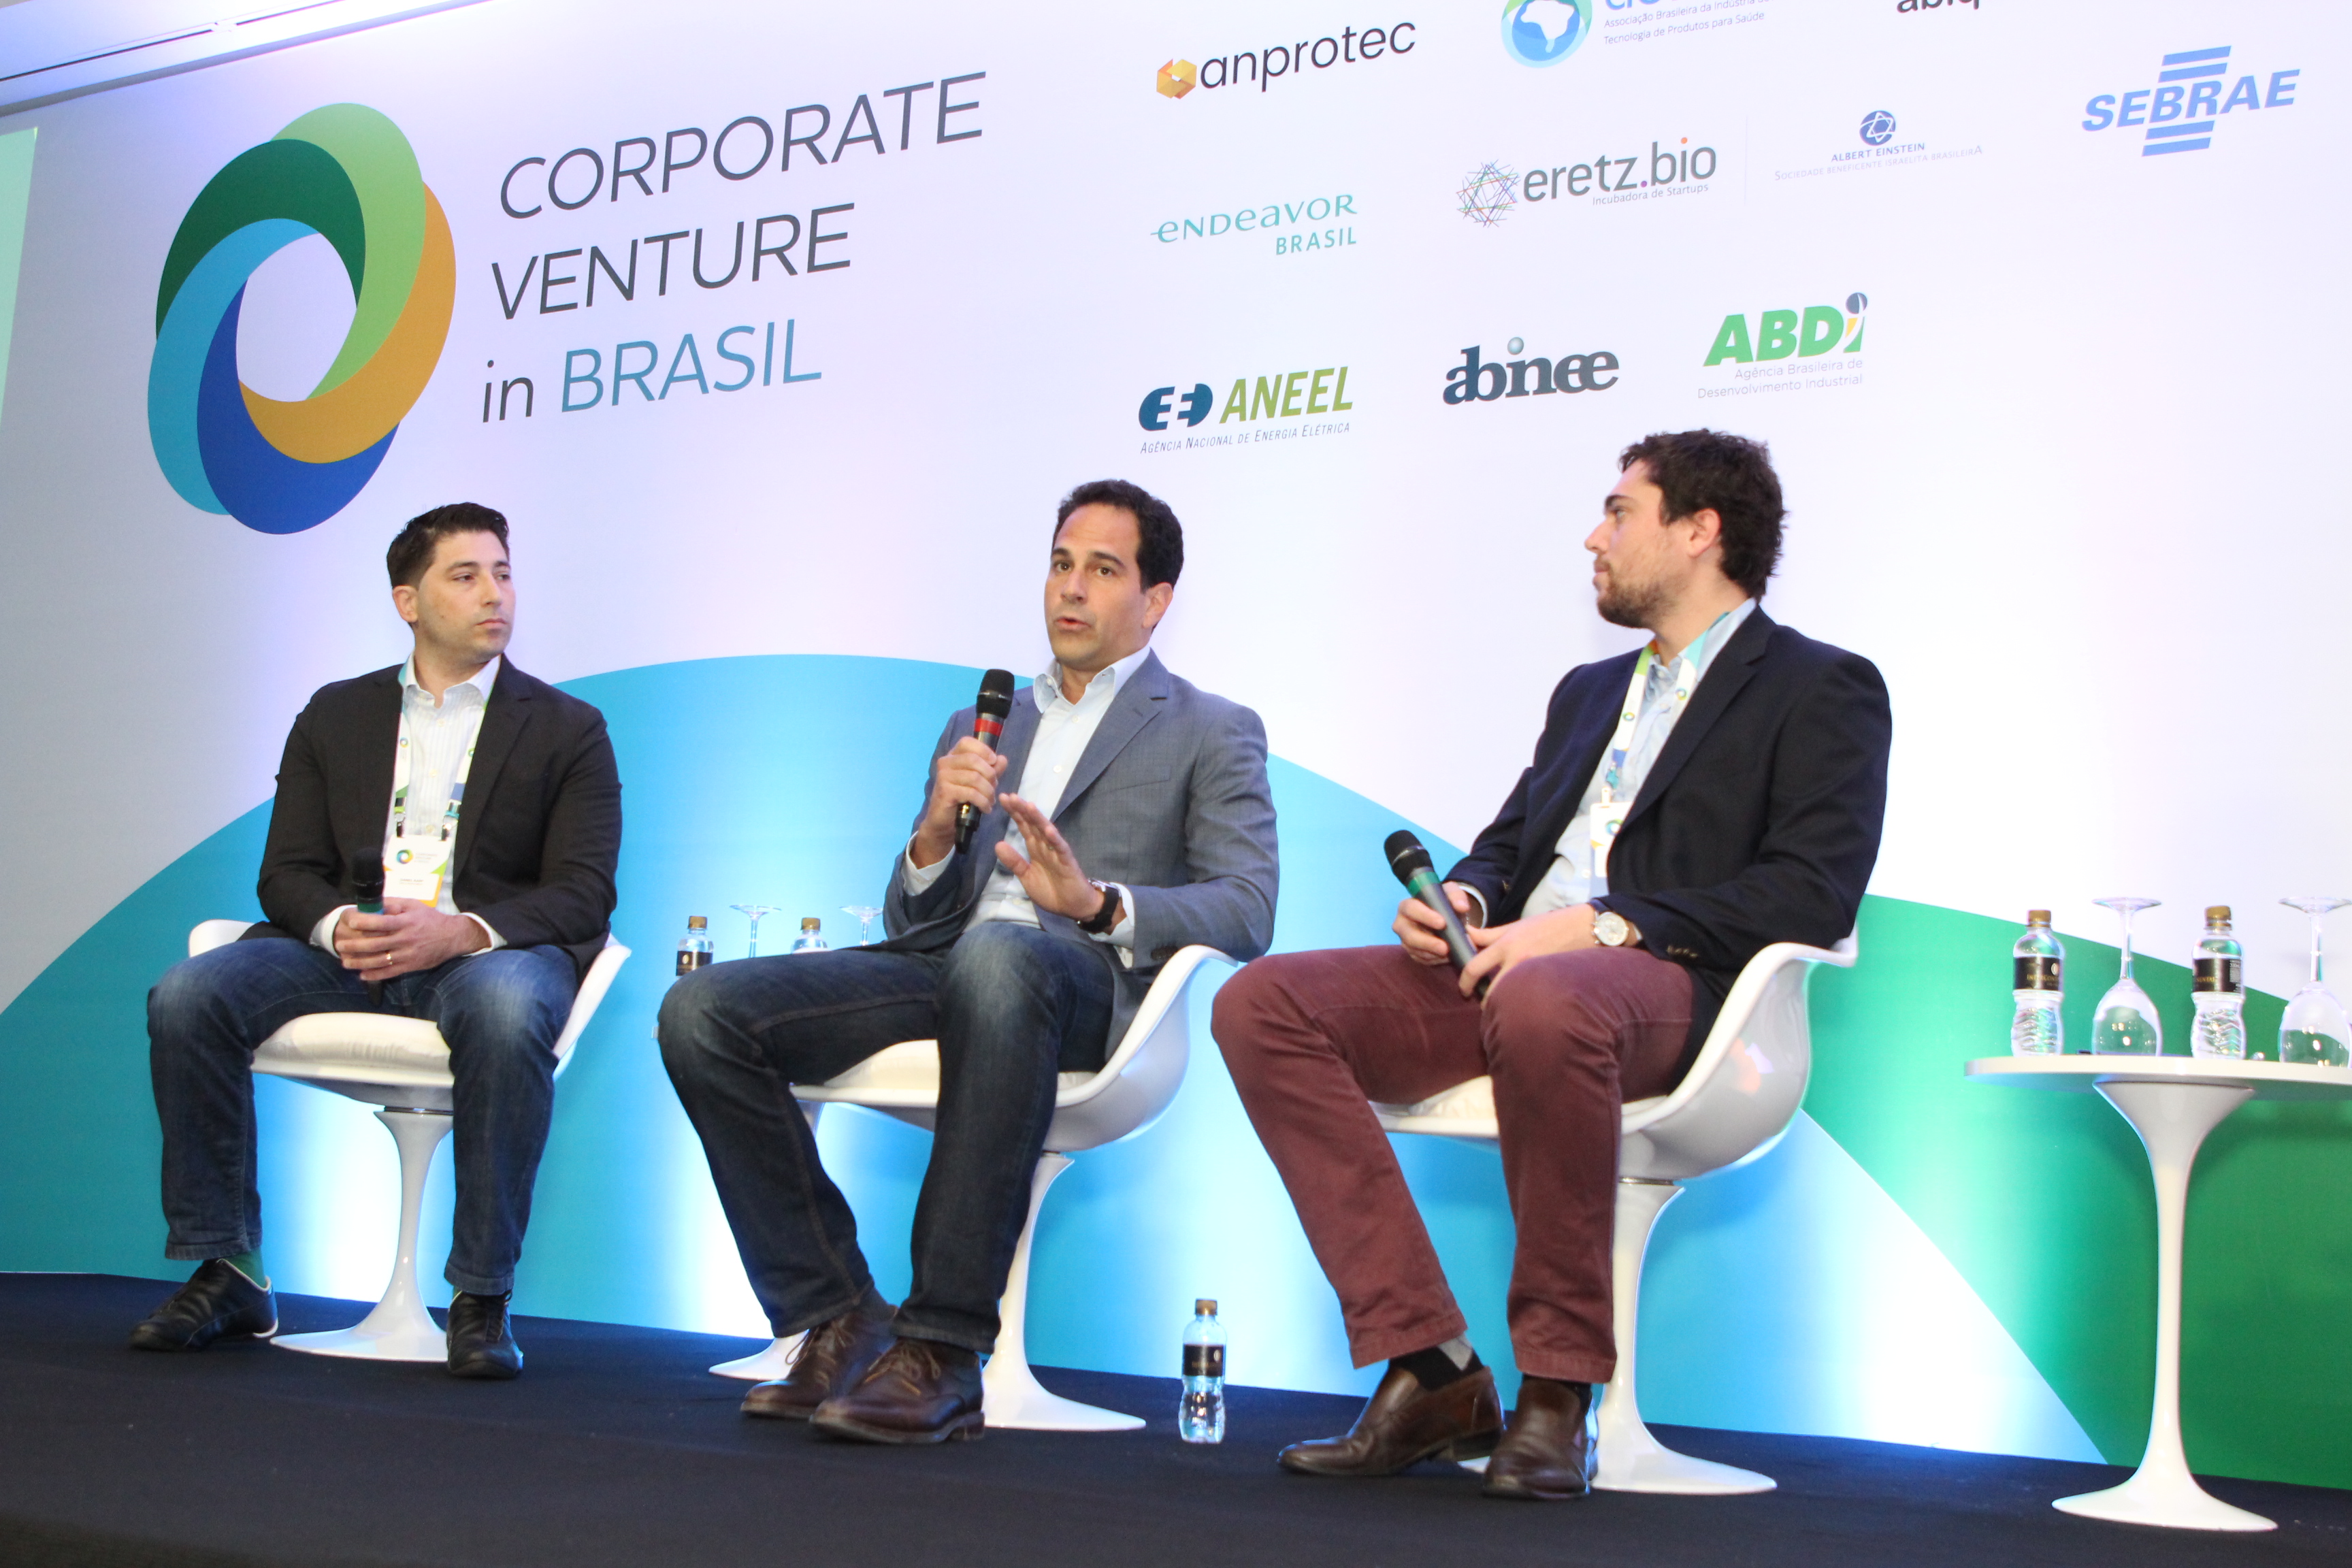 Daniel Karp (à esquerda) participou da última edição do Corporate Venture in Brasil